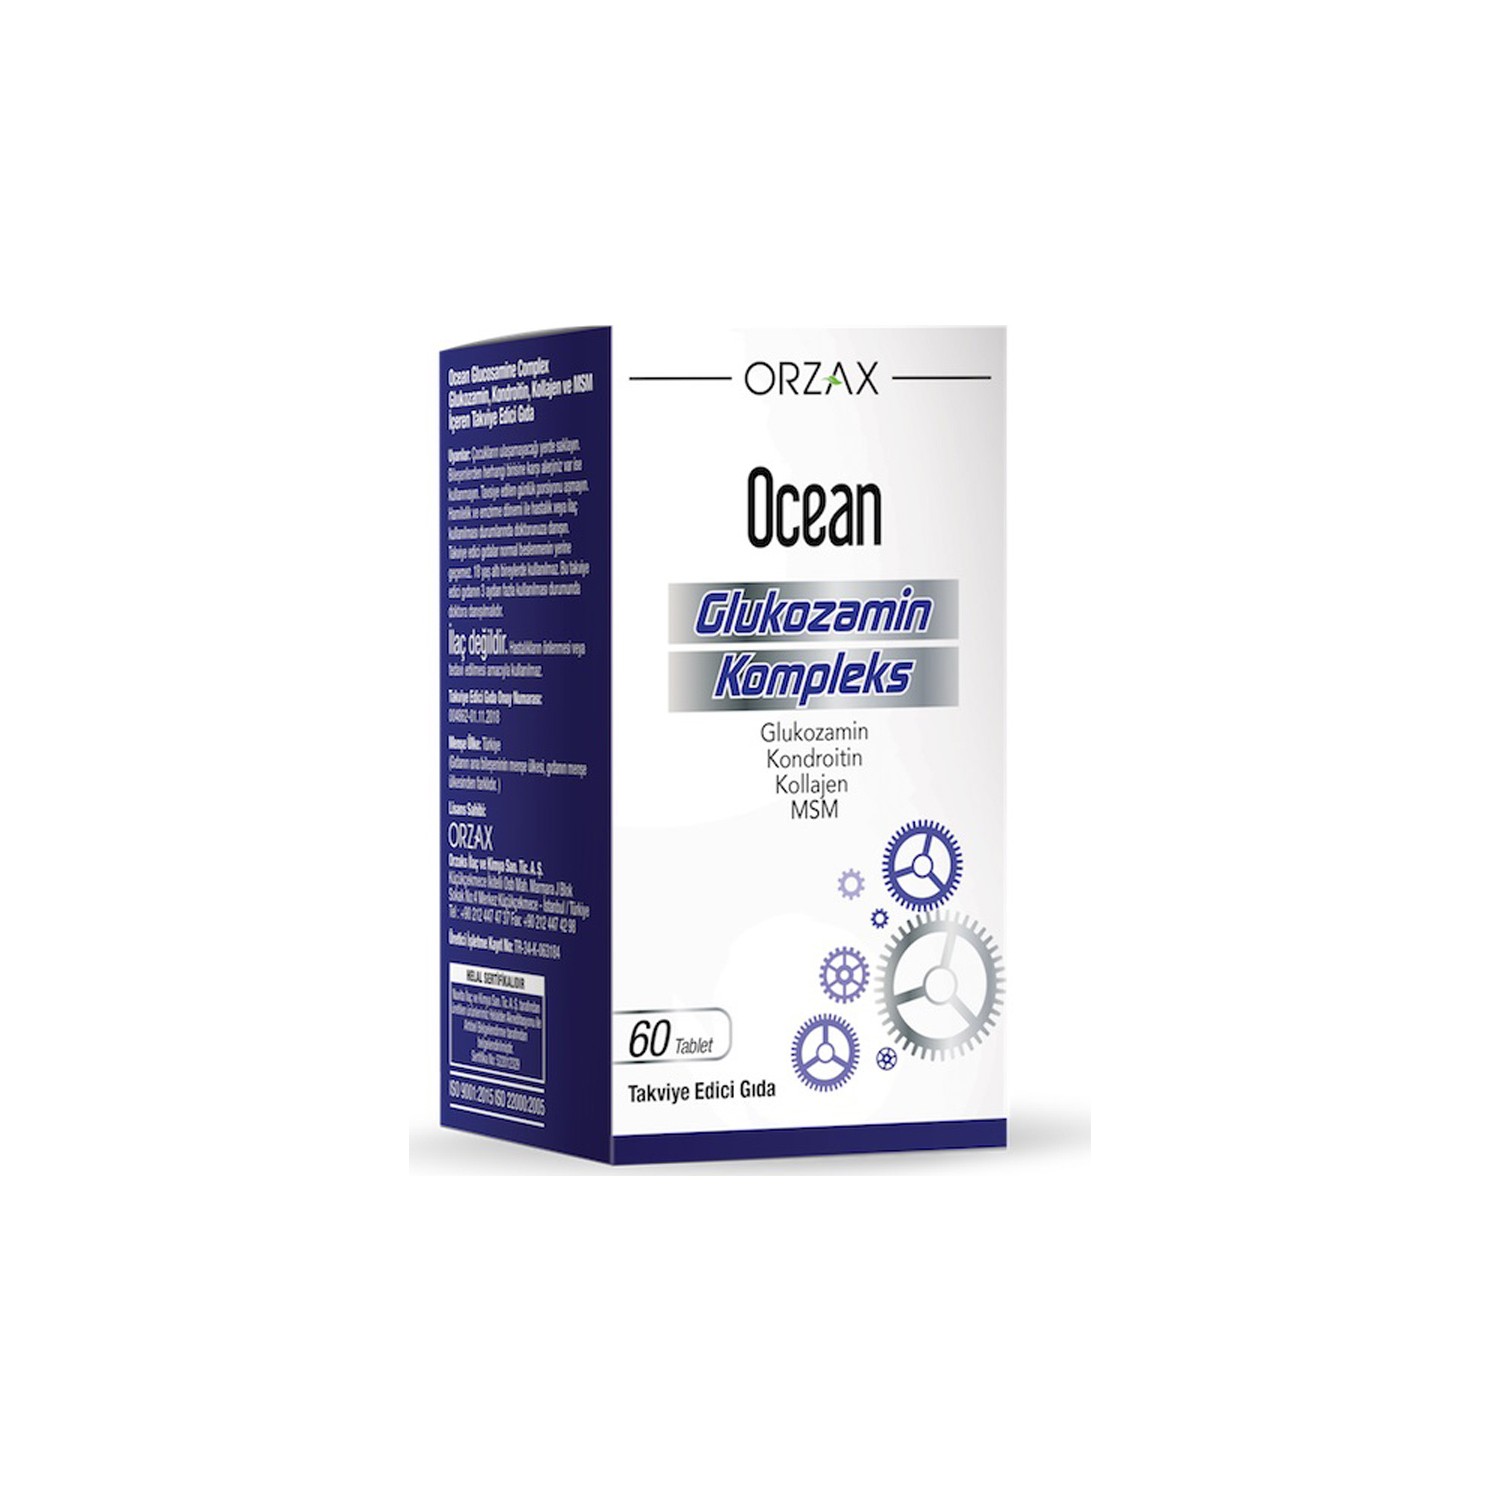 Глюкозаминовый комплекс Orzax Ocean, 60 таблеток комплекс глюкозамина ocean 2 упаковки по 60 таблеток